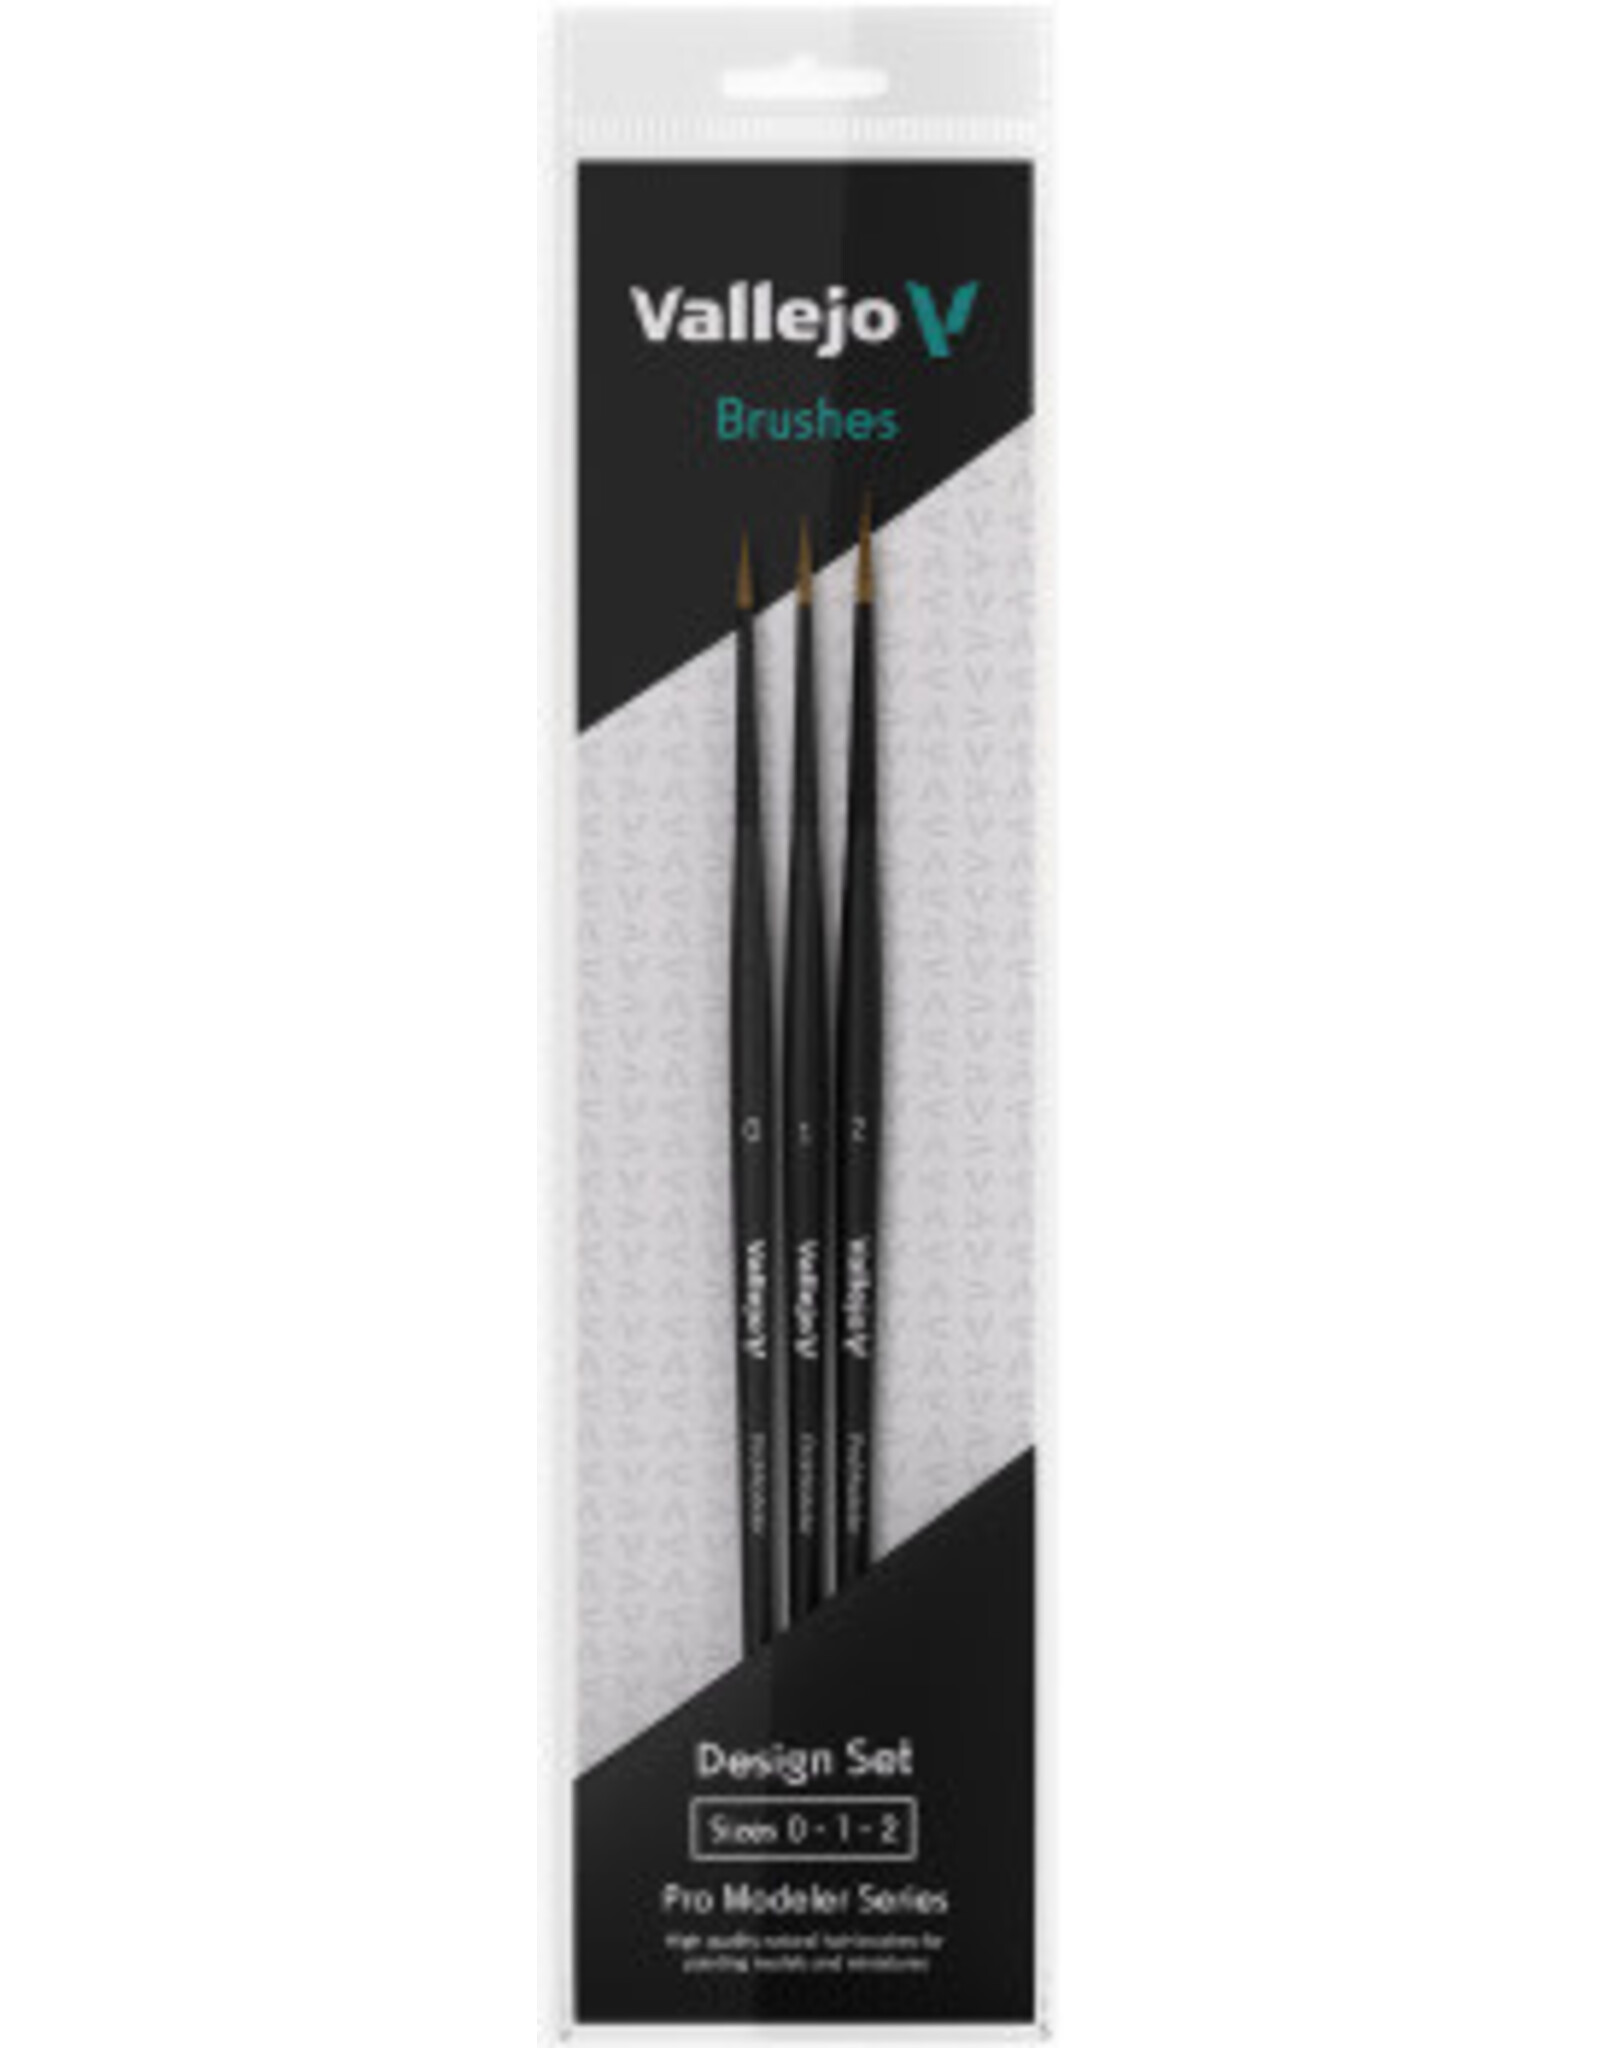 Vallejo Vallejo: Natural Hair Brush Design Set